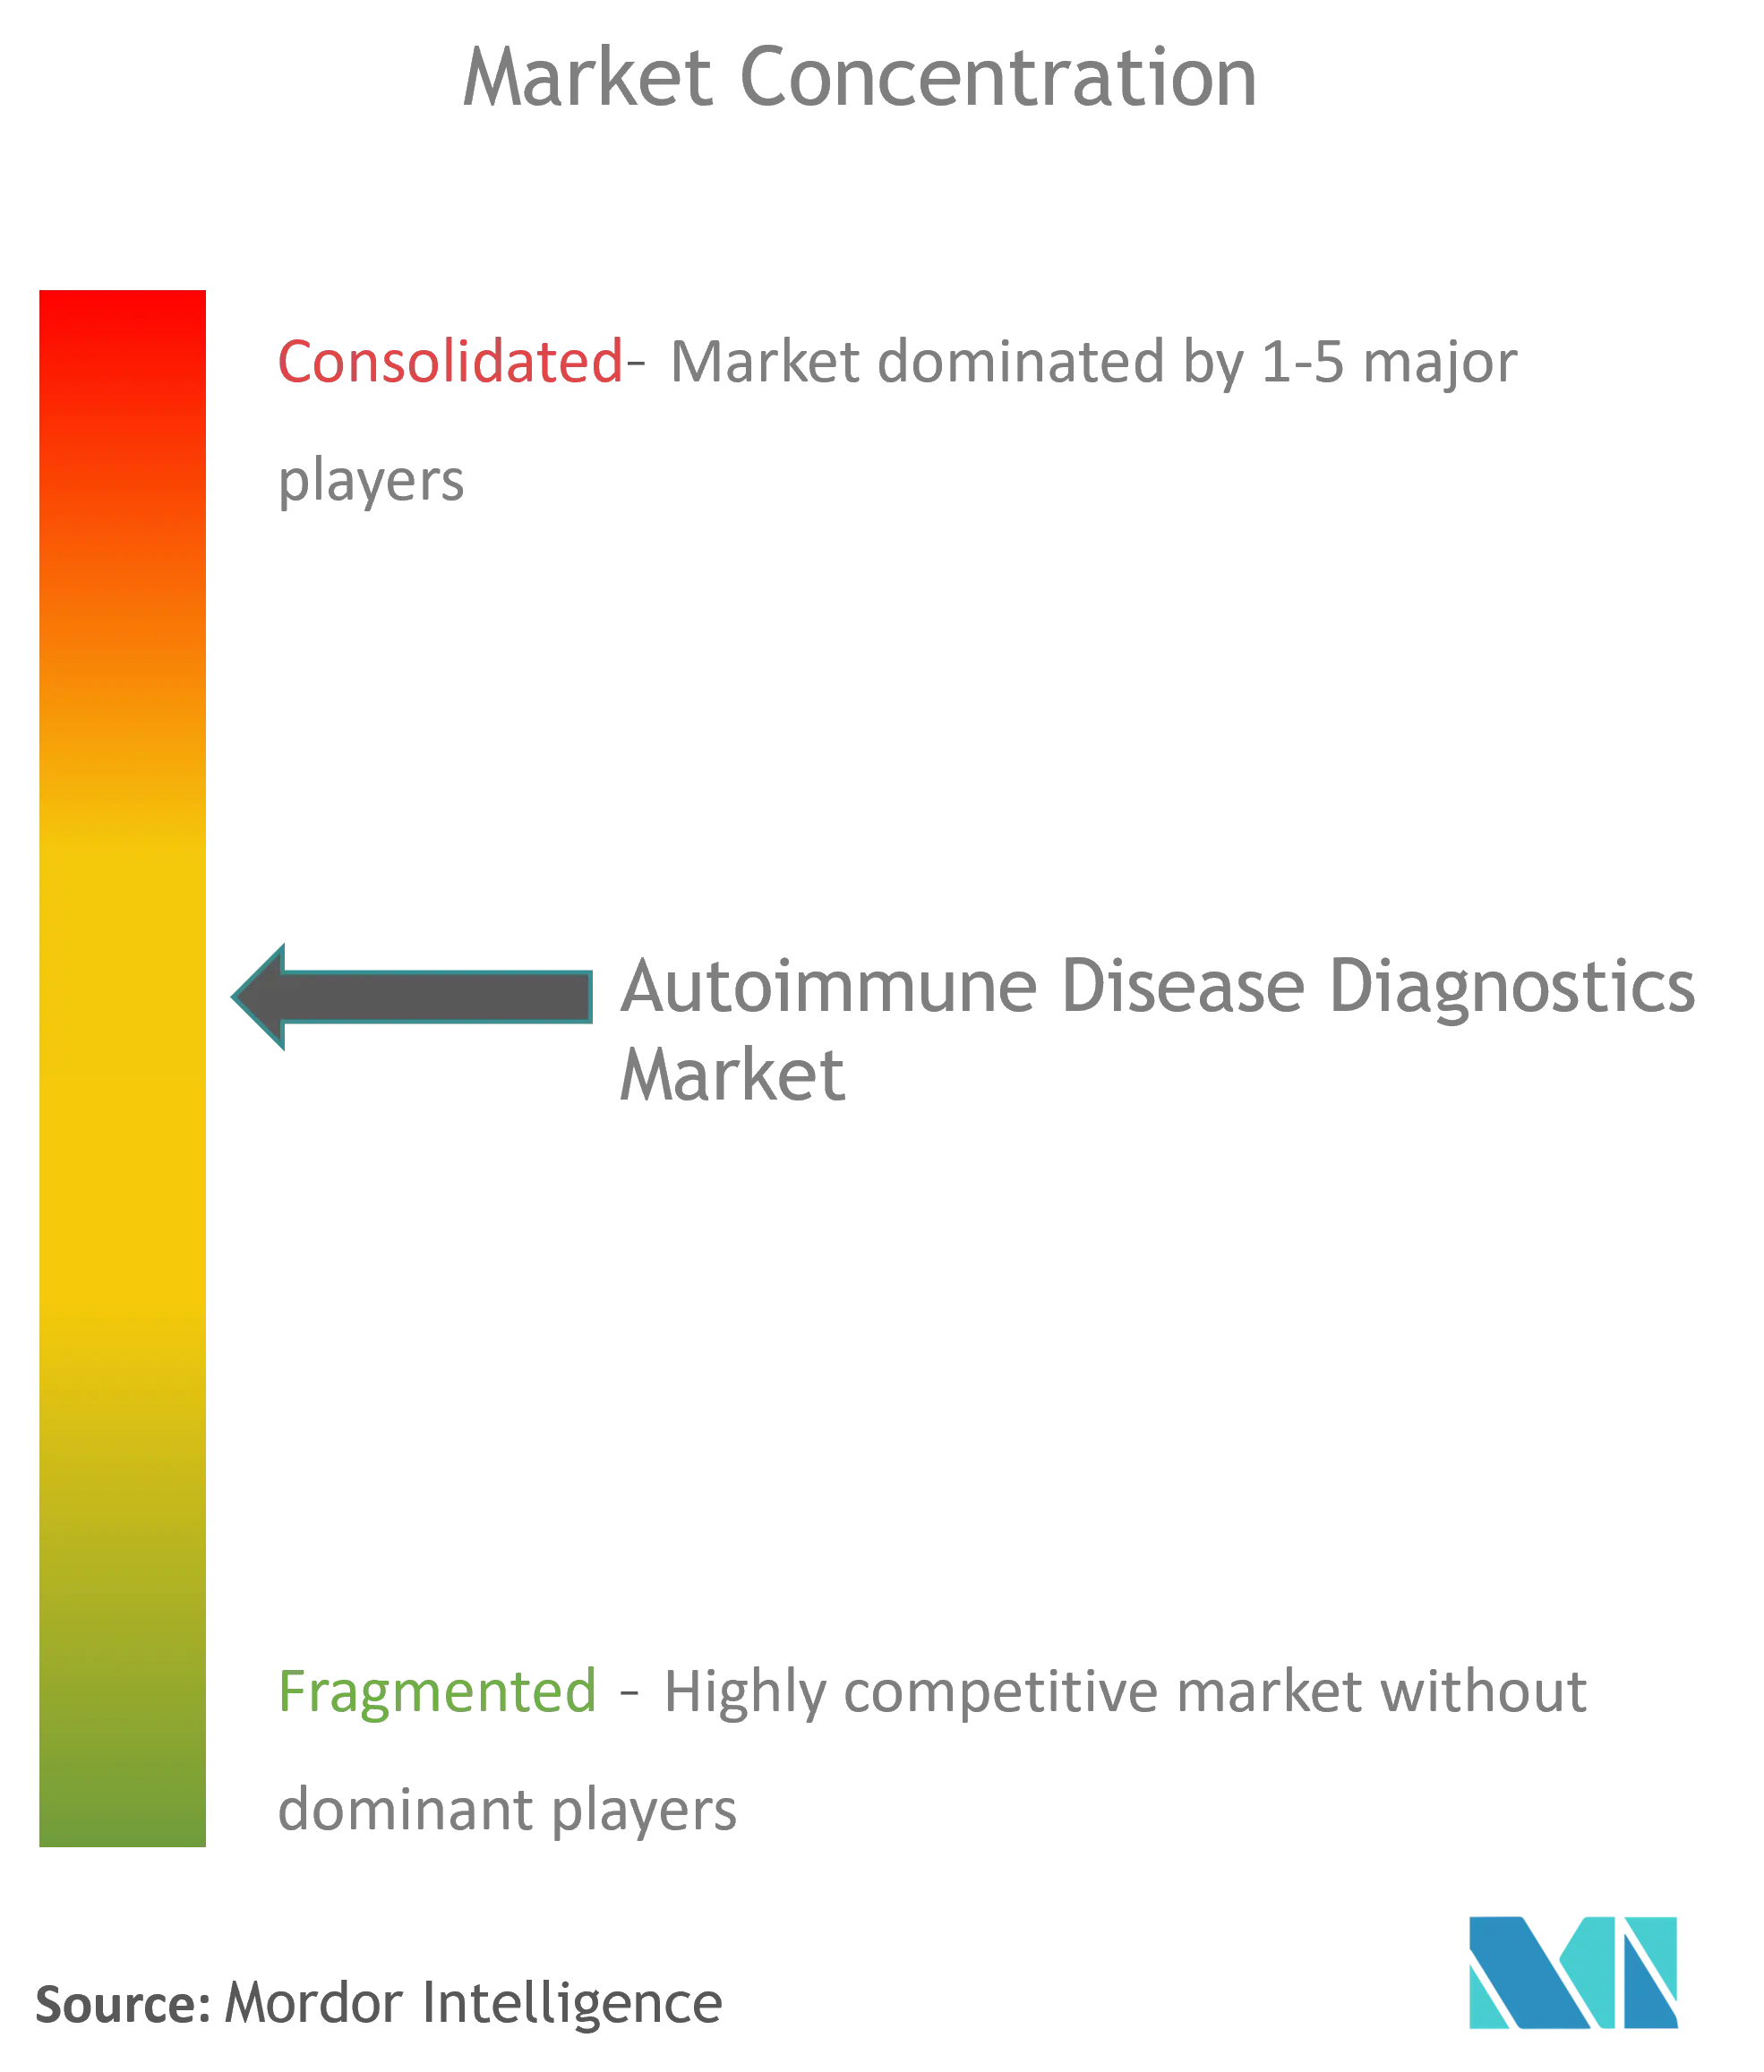 Diagnostik von AutoimmunerkrankungenMarktkonzentration